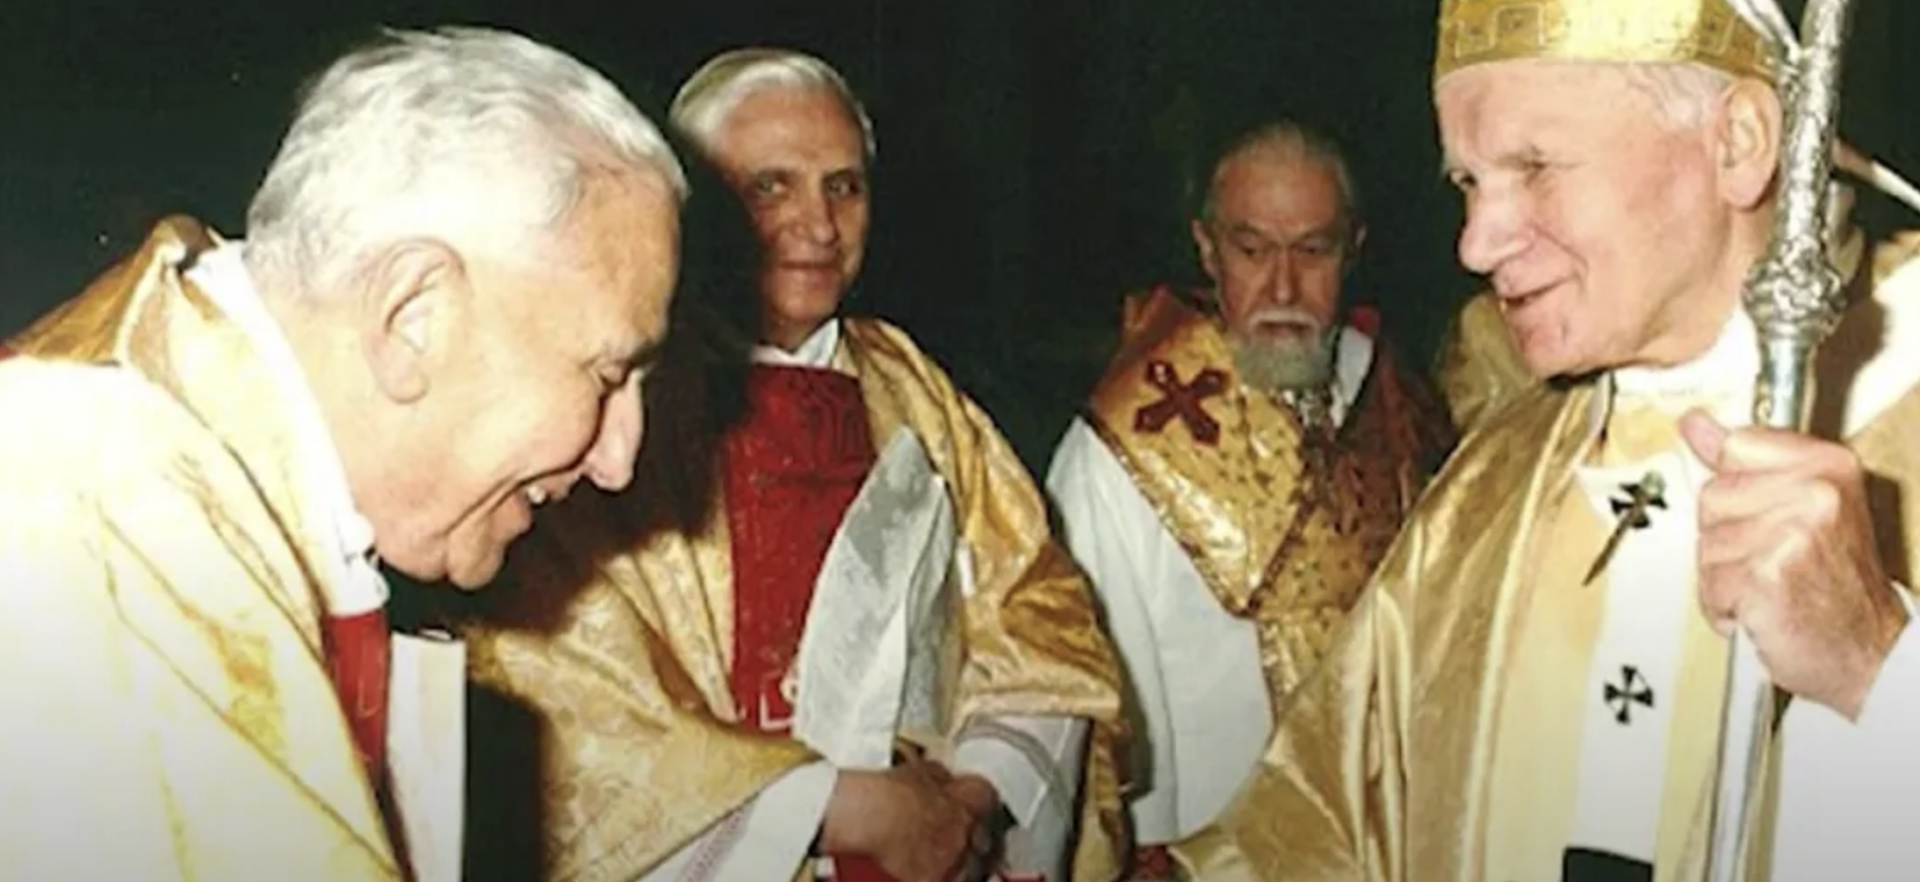 Le cardinal Eduardo Pironio saluant le pape Jean Paul II en présence du cardinal Joseph Ratzinger | © Capture d'écran YouTube - Divine Retreat Goodness TV